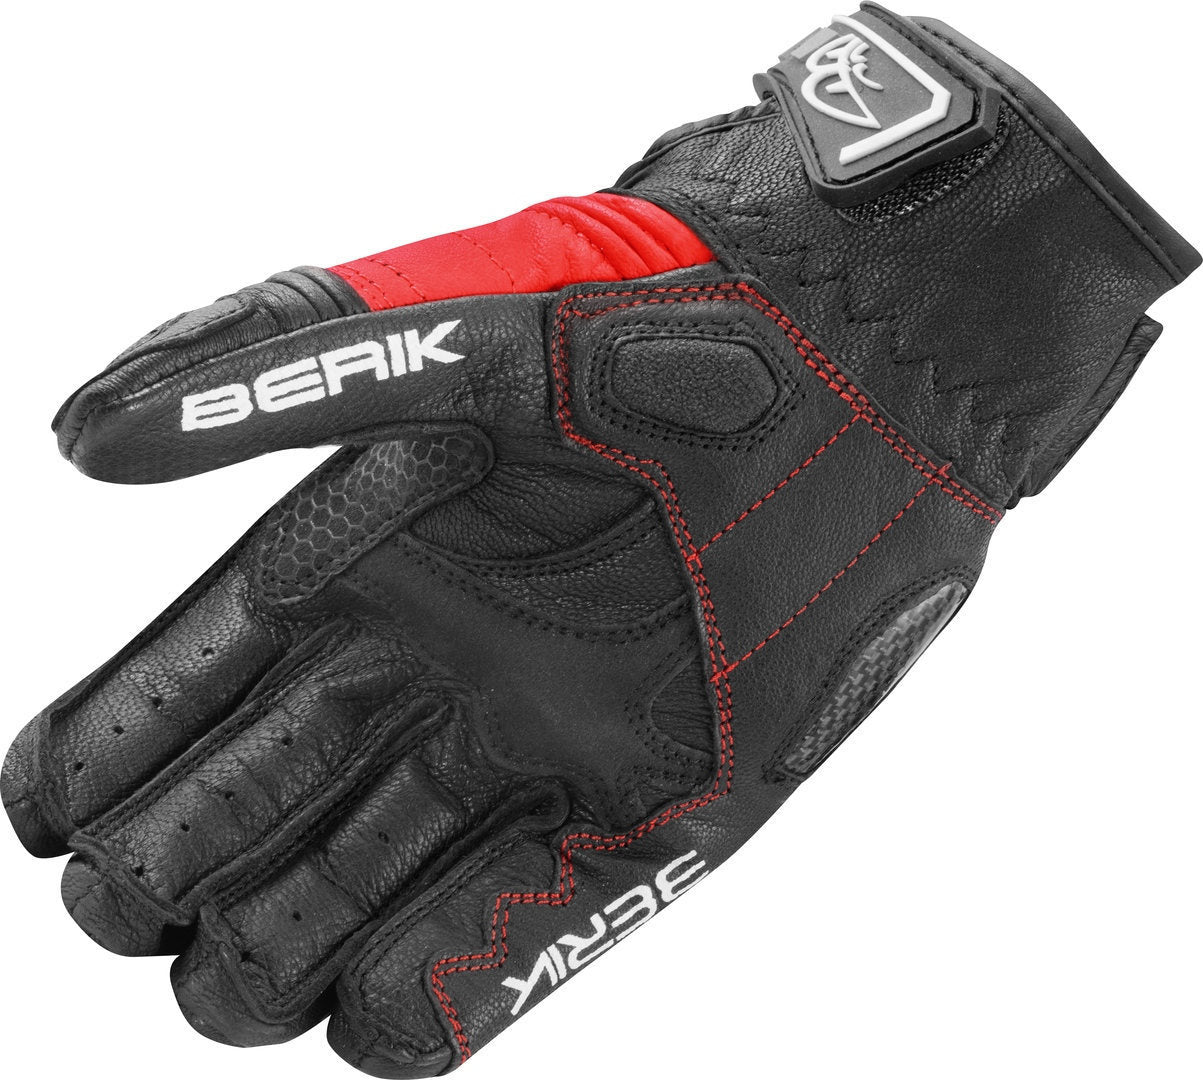 Berik LDX Ladies Motorcycle Gloves#color_black-white-red